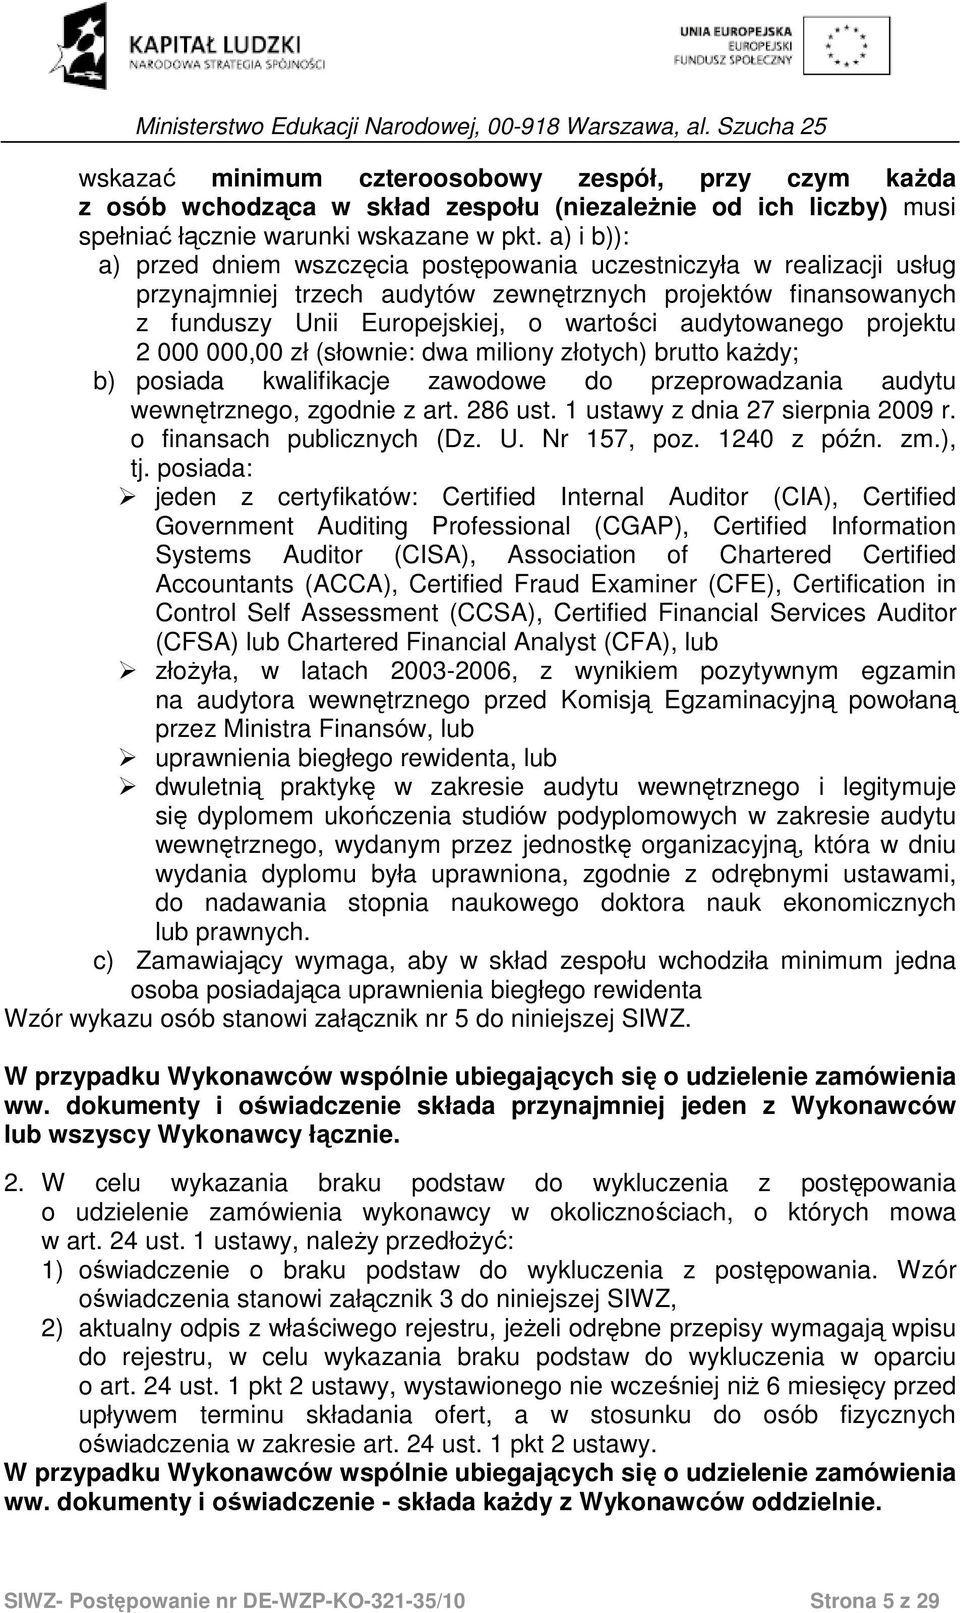 projektu 2 000 000,00 zł (słownie: dwa miliony złotych) brutto kaŝdy; b) posiada kwalifikacje zawodowe do przeprowadzania audytu wewnętrznego, zgodnie z art. 286 ust.